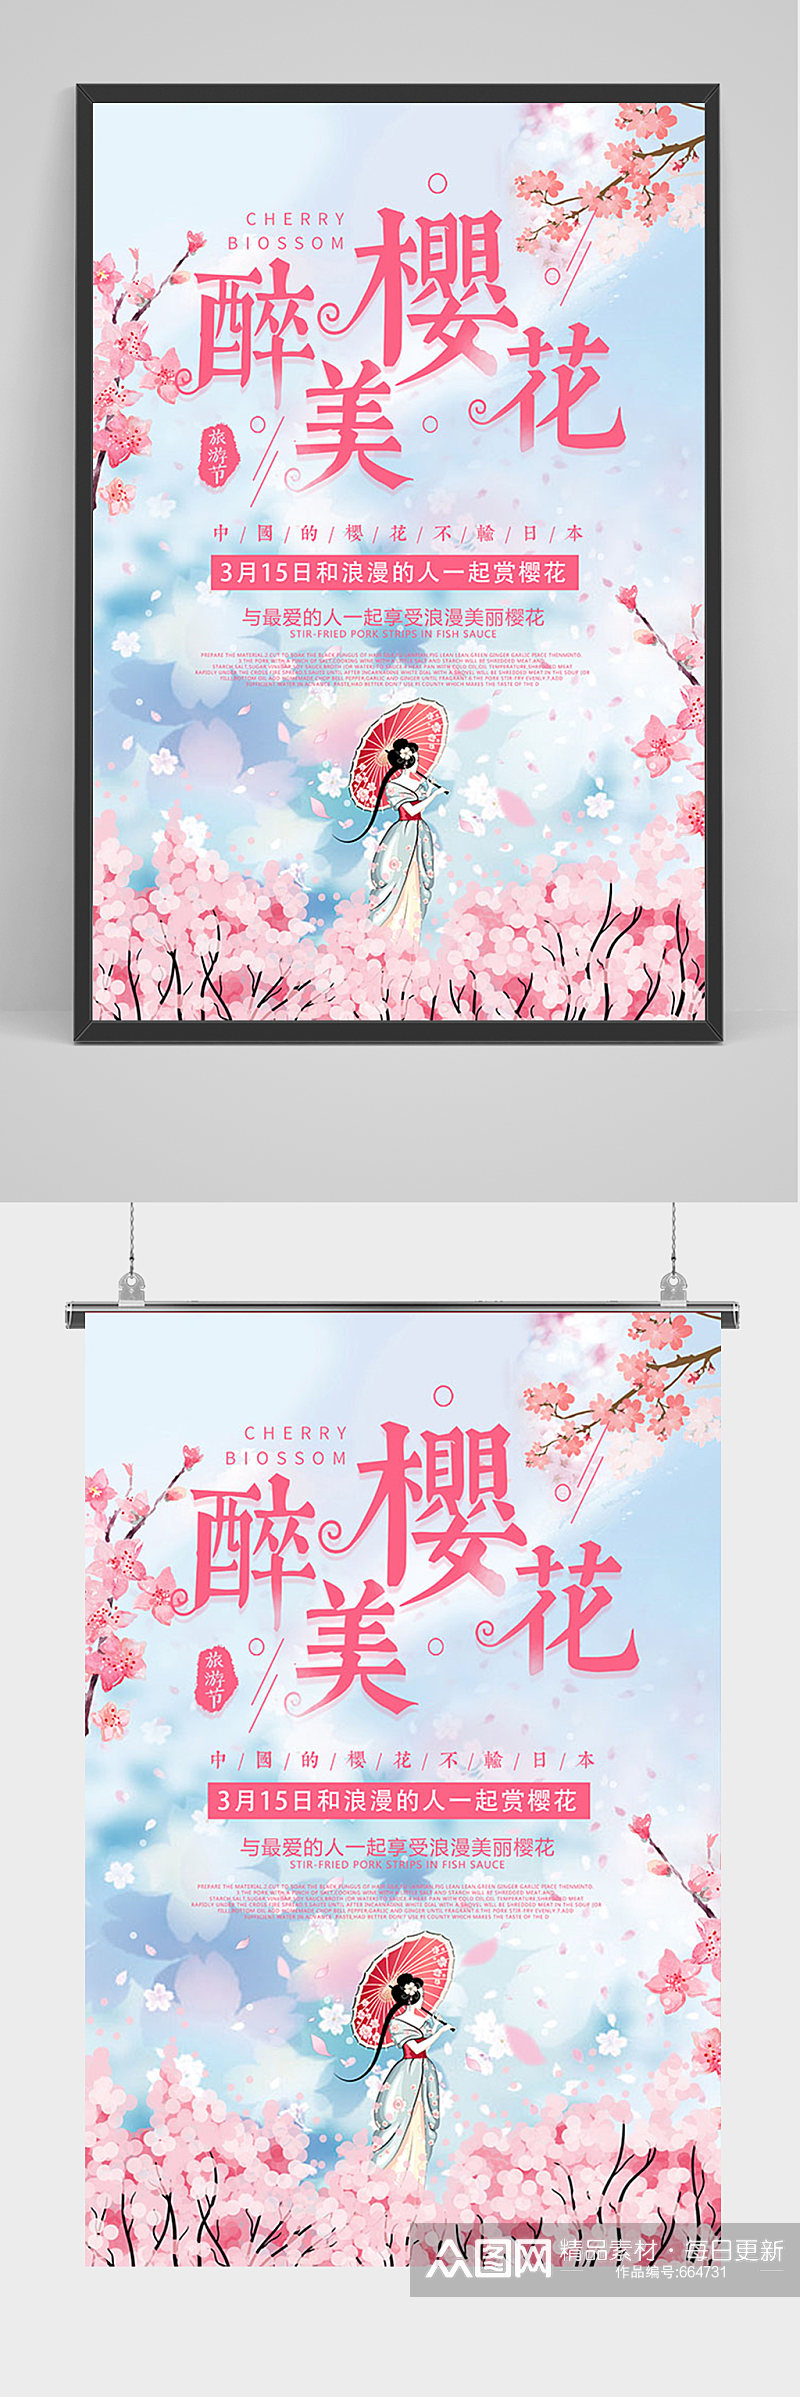 中国风醉美樱花樱花节海报素材